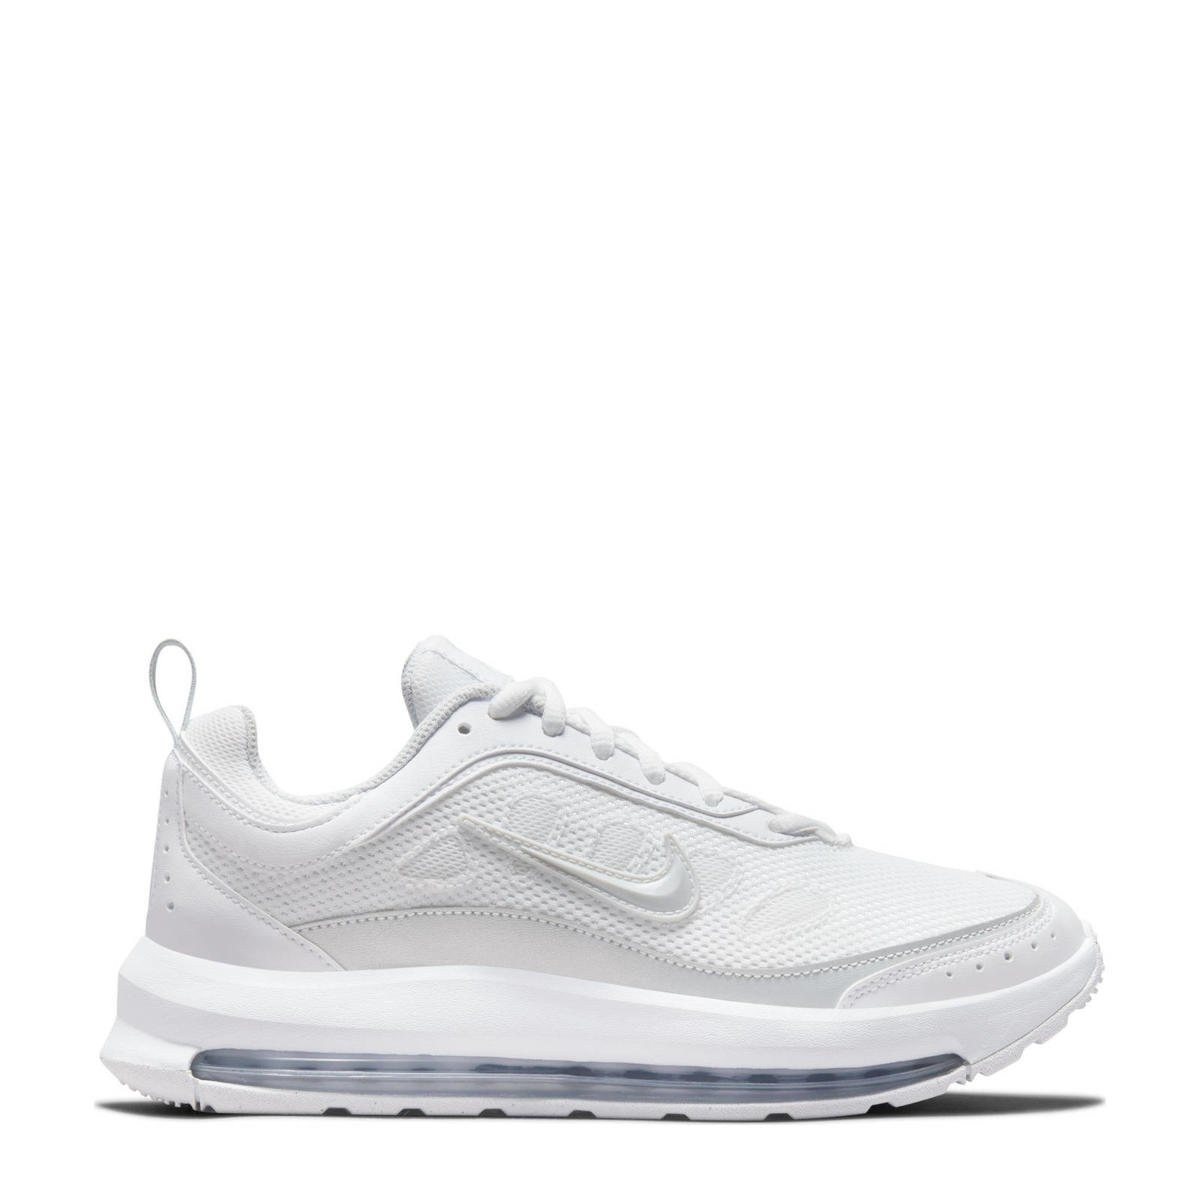 Mantsjoerije krijgen contact Nike Air Max AP sneakers wit/zilver/grijs | wehkamp